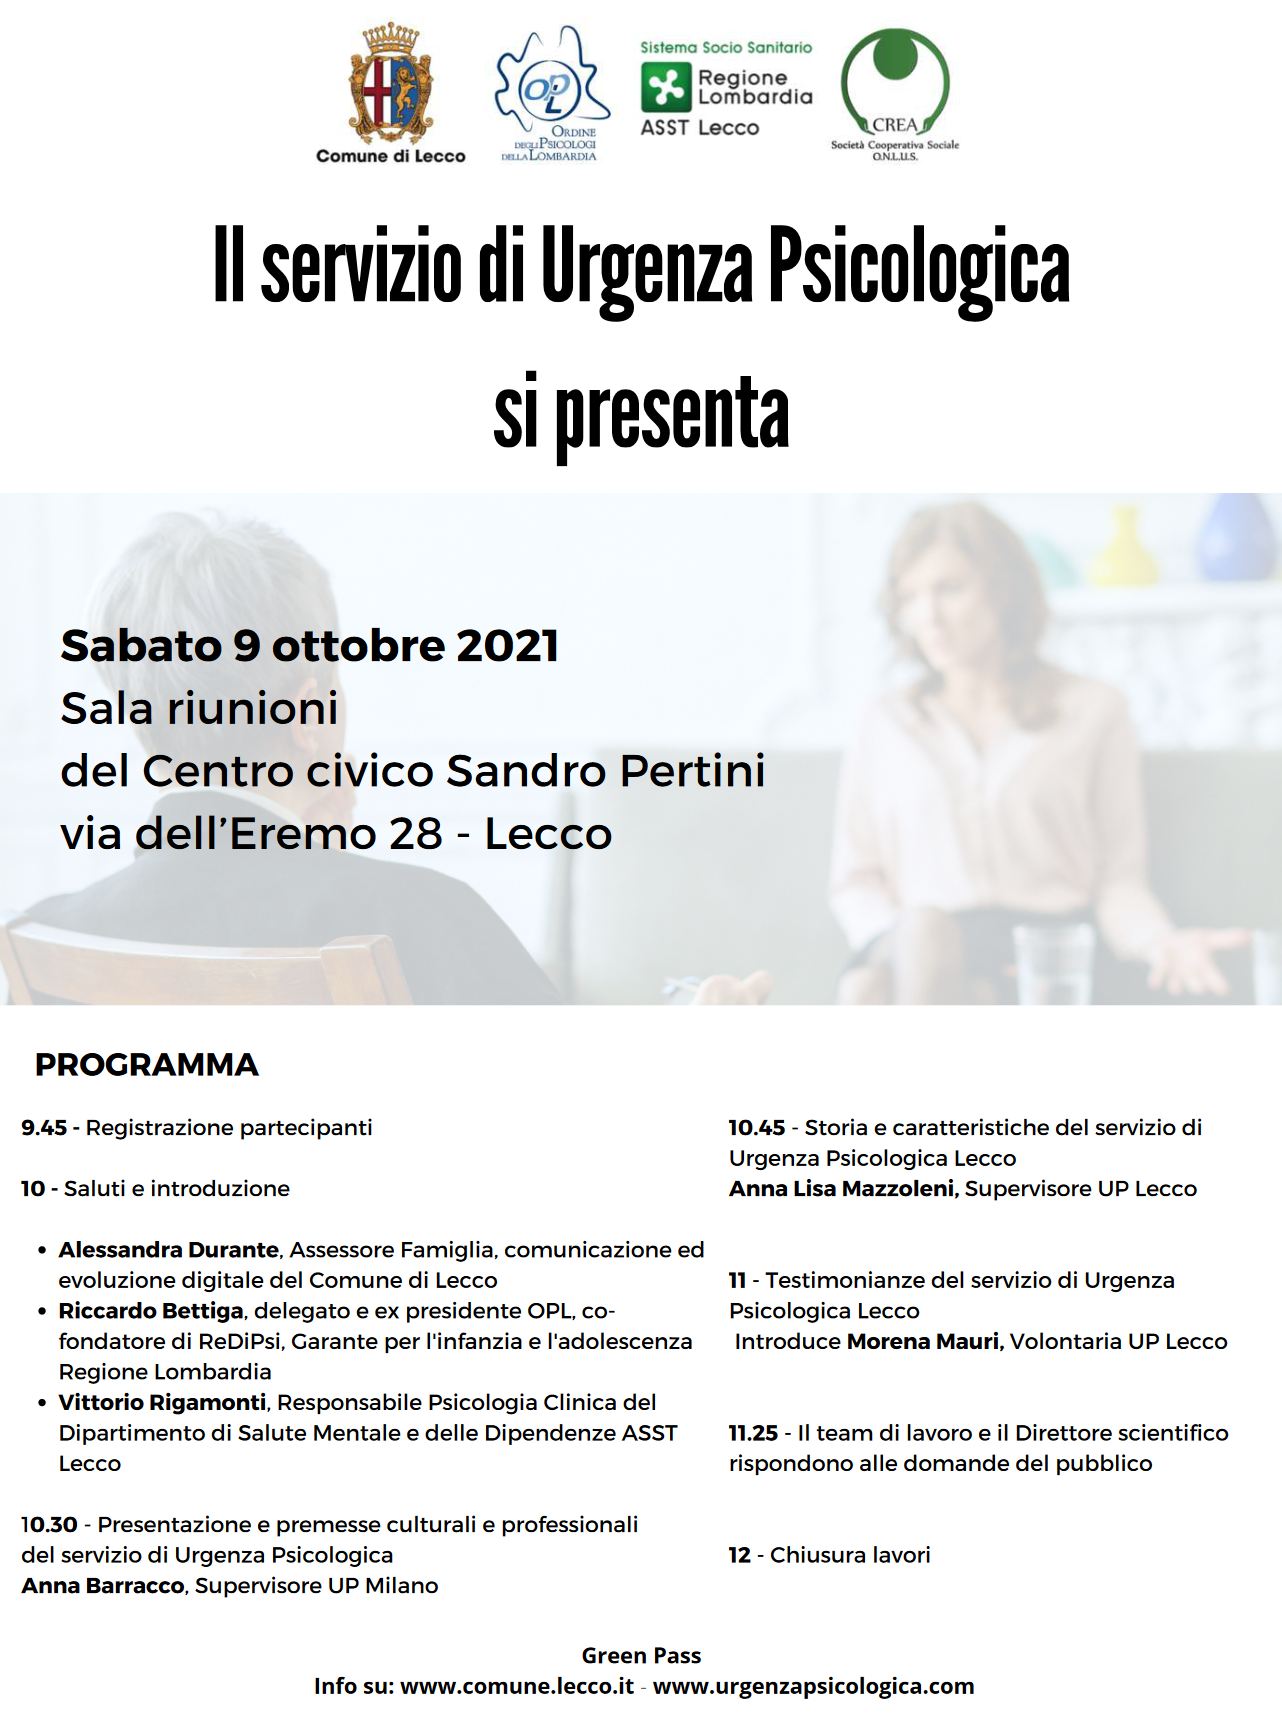 Il servizio di Urgenza psicologica di Lecco si presenta: 9 ottobre 2021 